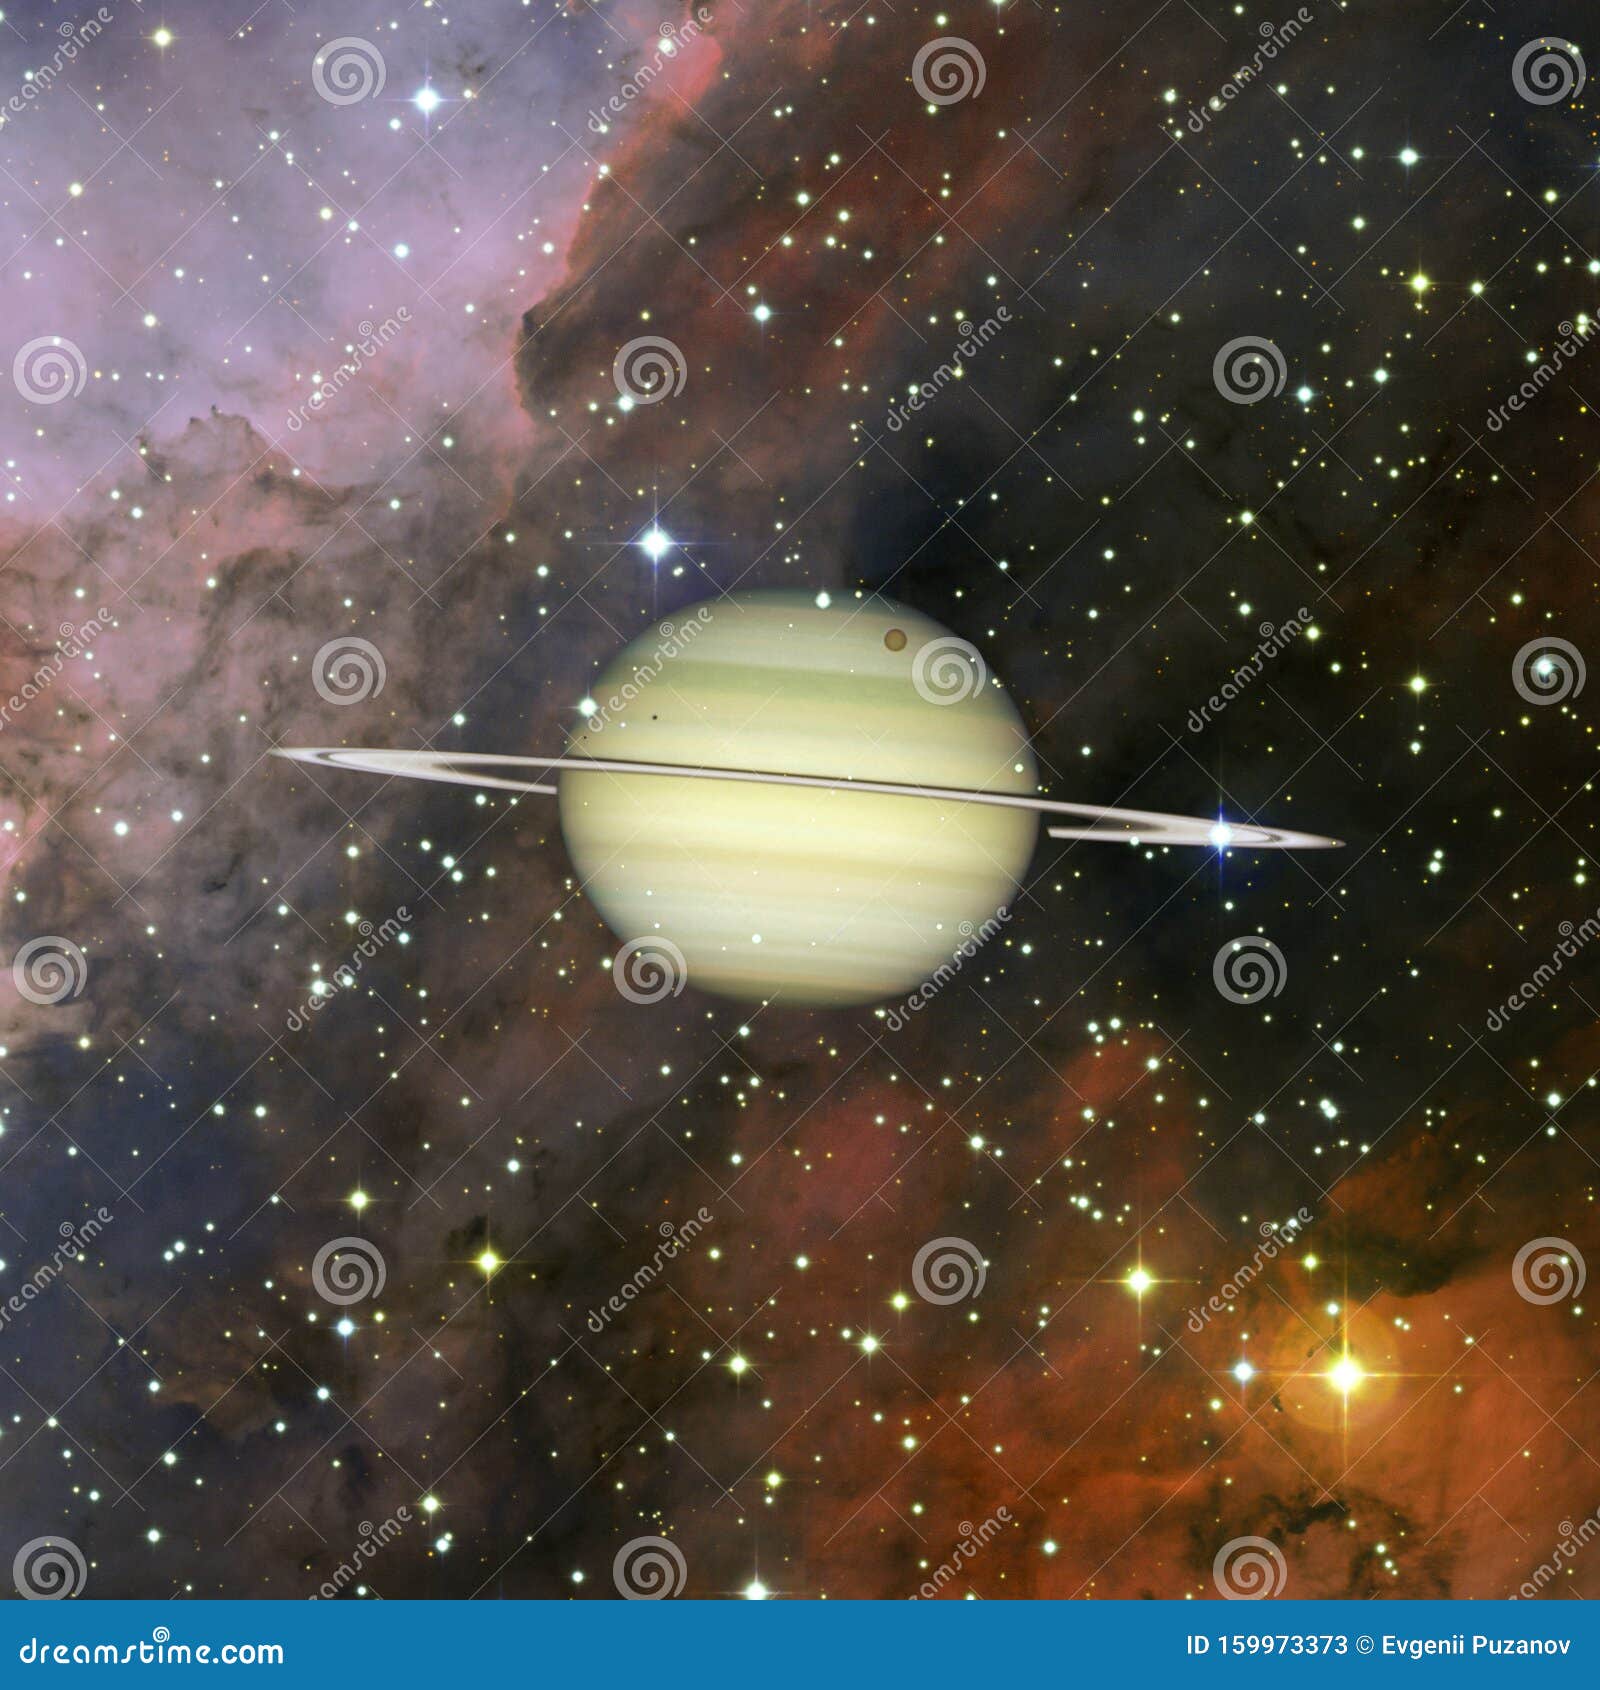 土星 太阳系的行星美国宇航局提供的这幅图像的元素库存图片 图片包括有